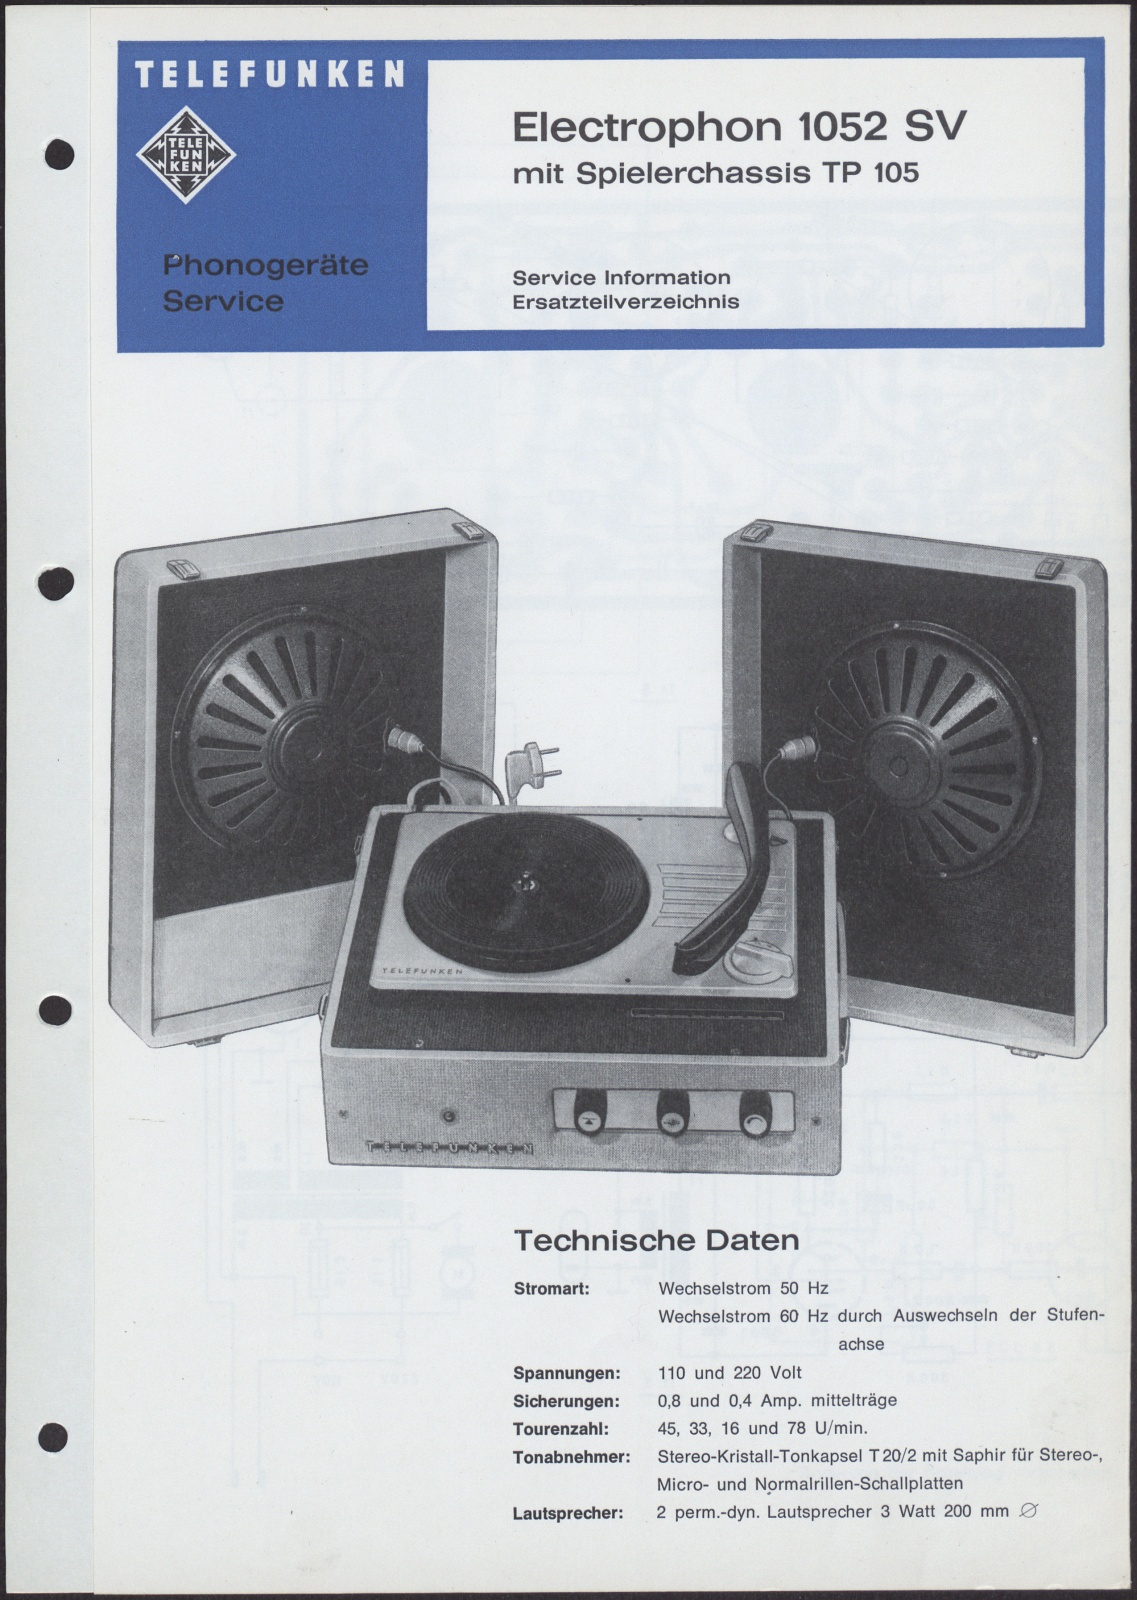 Bedienungsanleitung: Phonogeräte Service Electrophon 1052 SV mit Spielerchasssis TP 105 (Stiftung Deutsches Technikmuseum Berlin CC0)